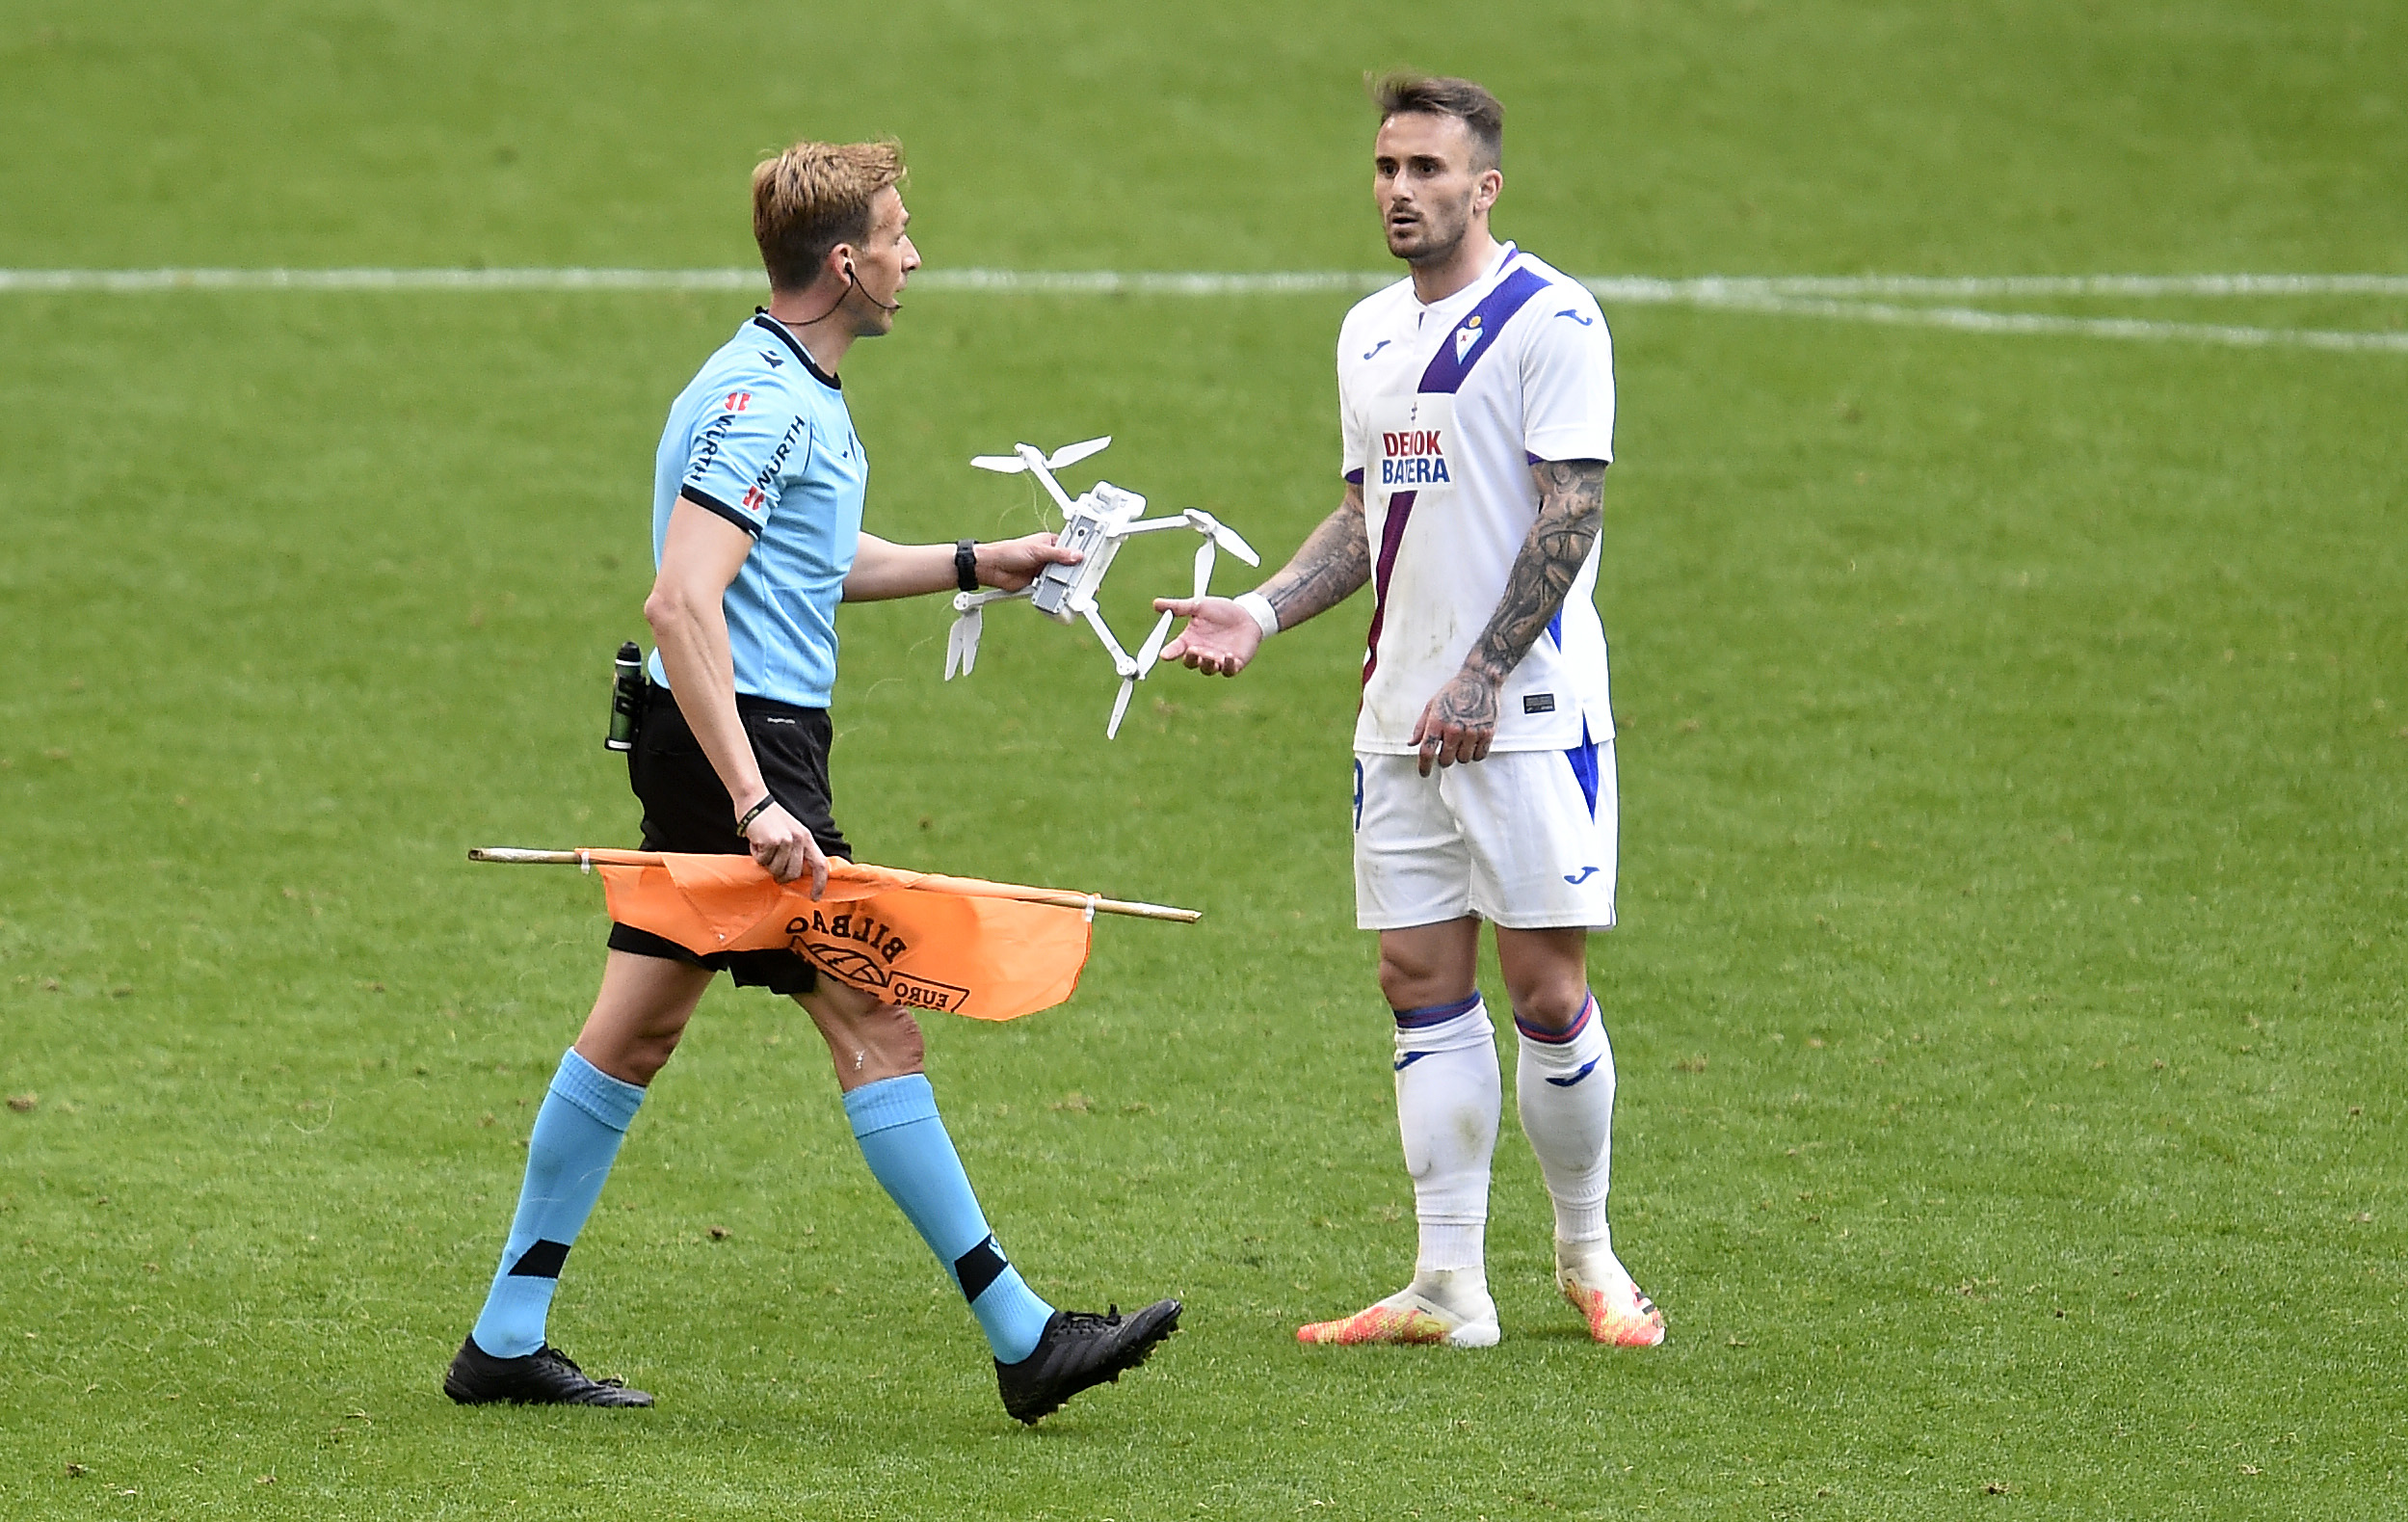 Un drone s’invite pendant un match de foot en Espagne